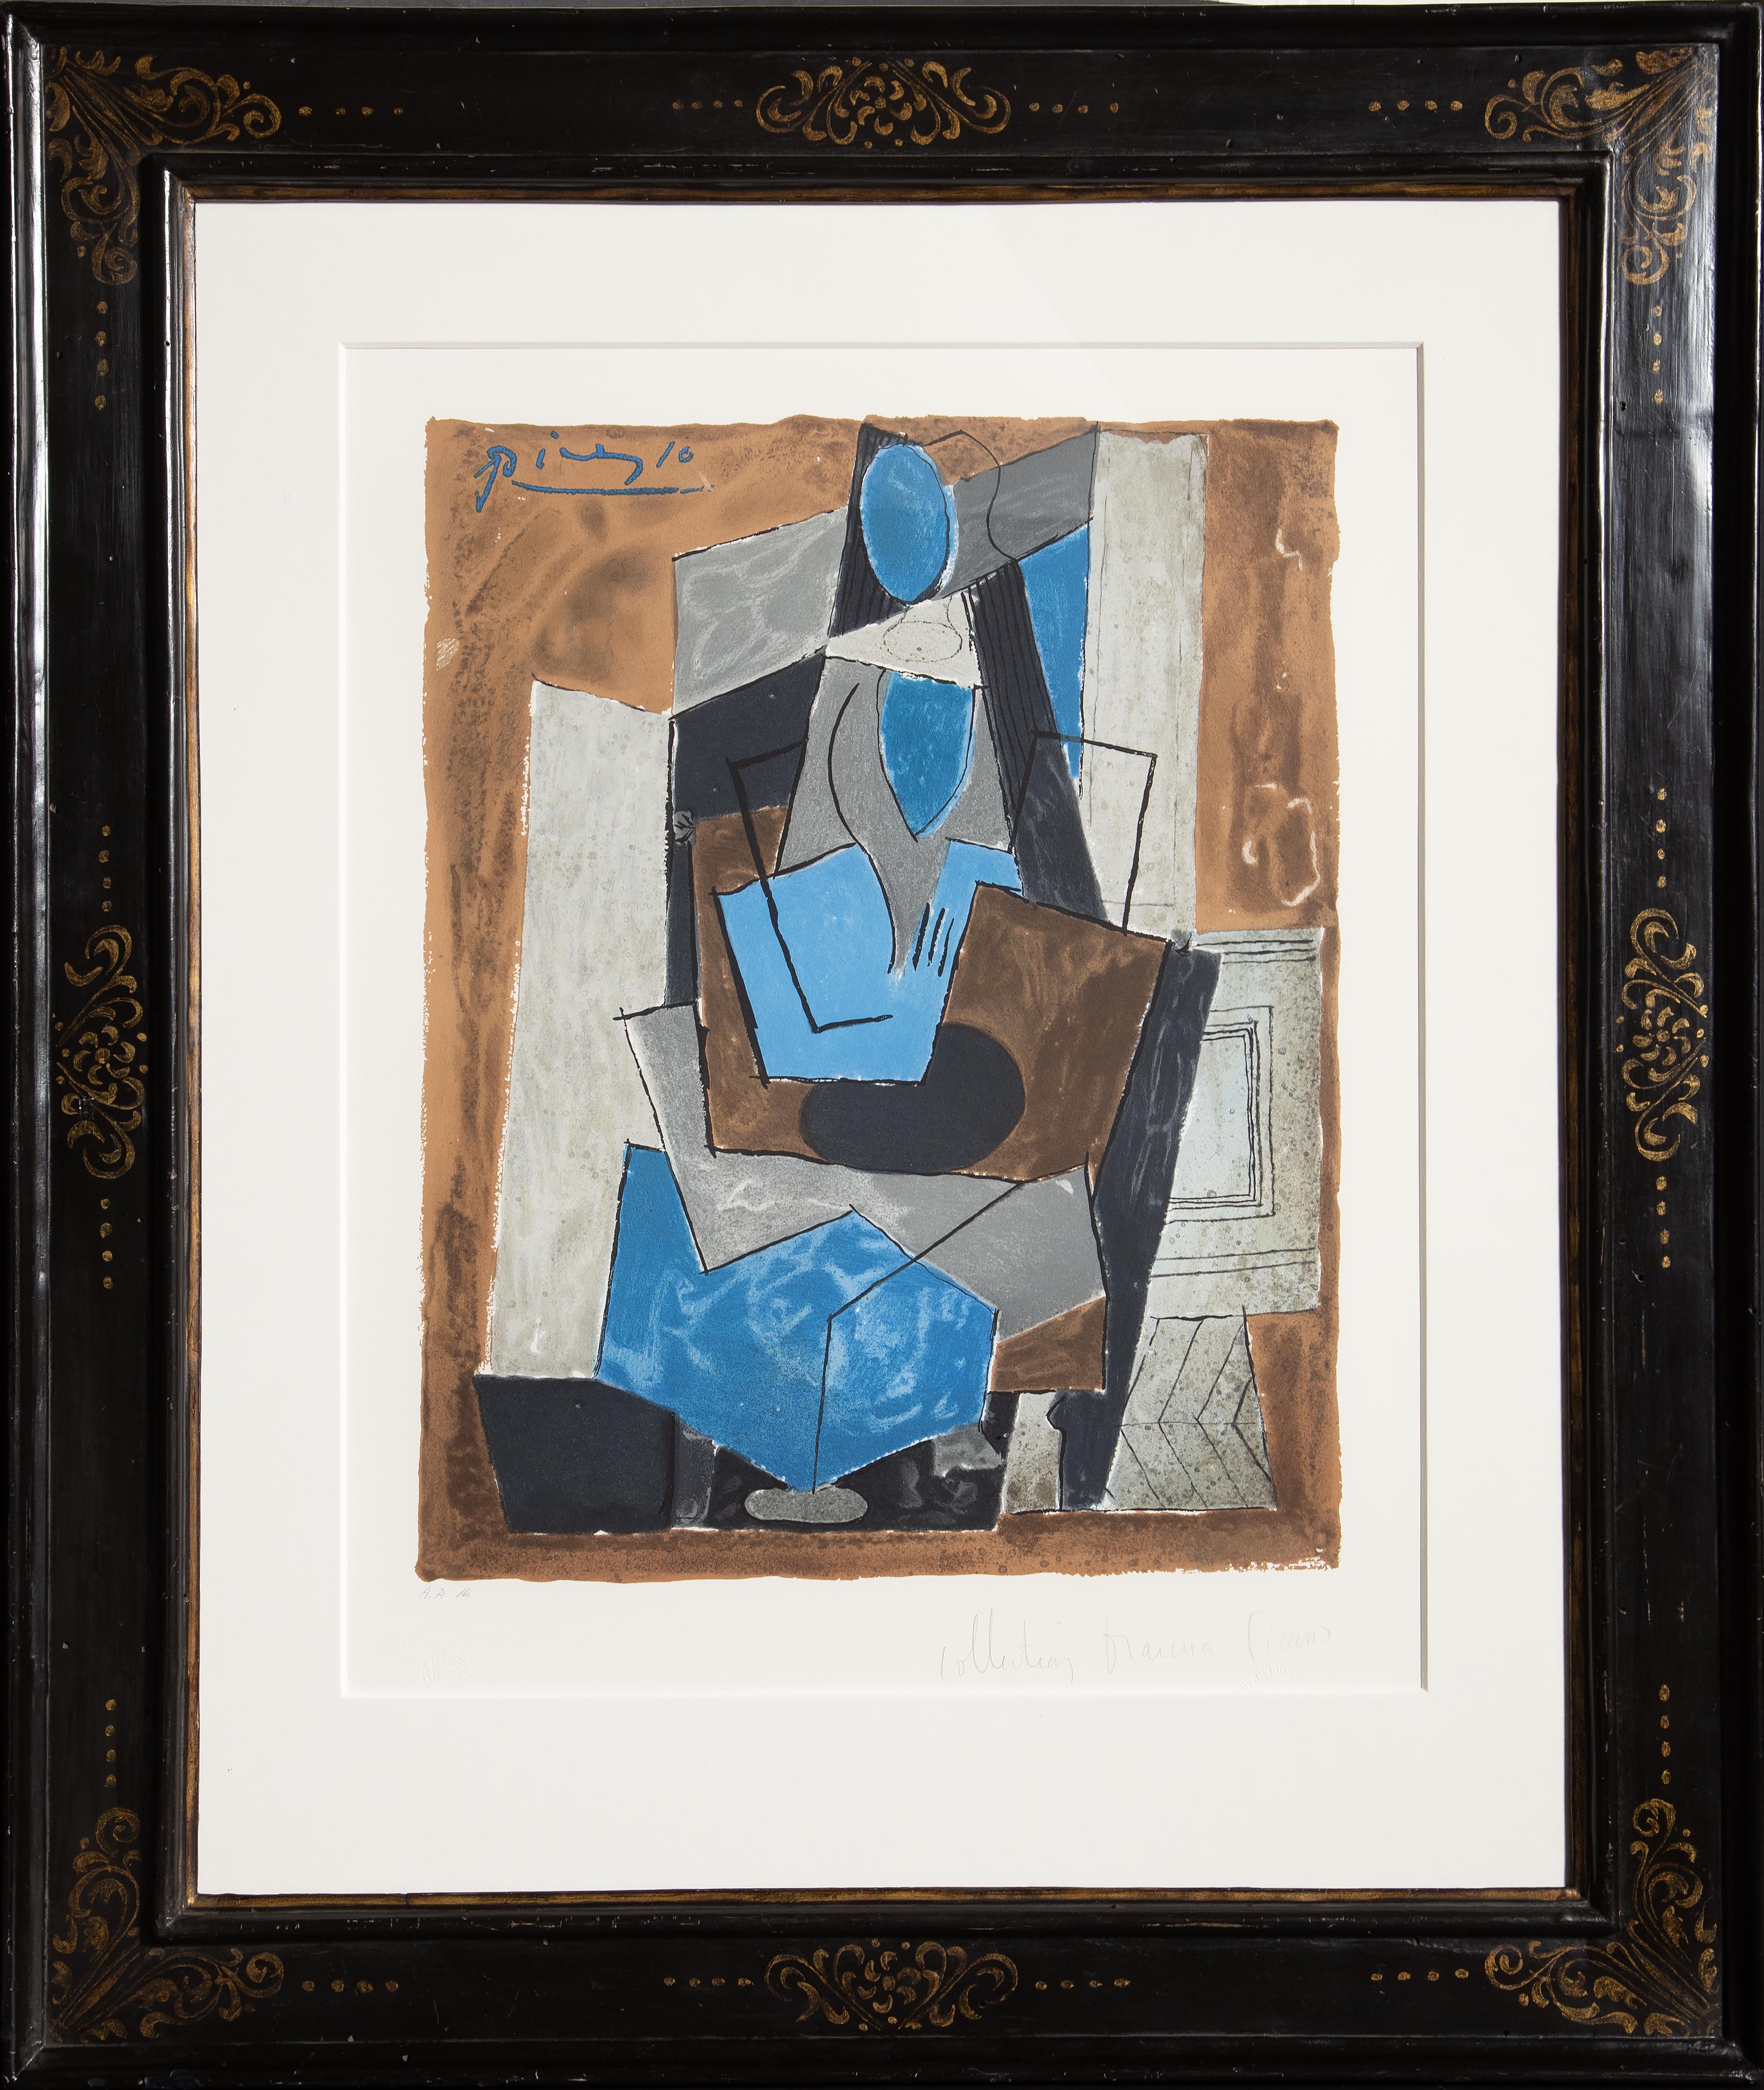 Réduit à des formes angulaires, le modèle féminin de cette estampe de Pablo Picasso est représenté dans le style cubiste fondé et propagé par l'artiste lui-même. S'appuyant sur une perspective inventée, l'artiste réfute la perspective réaliste et